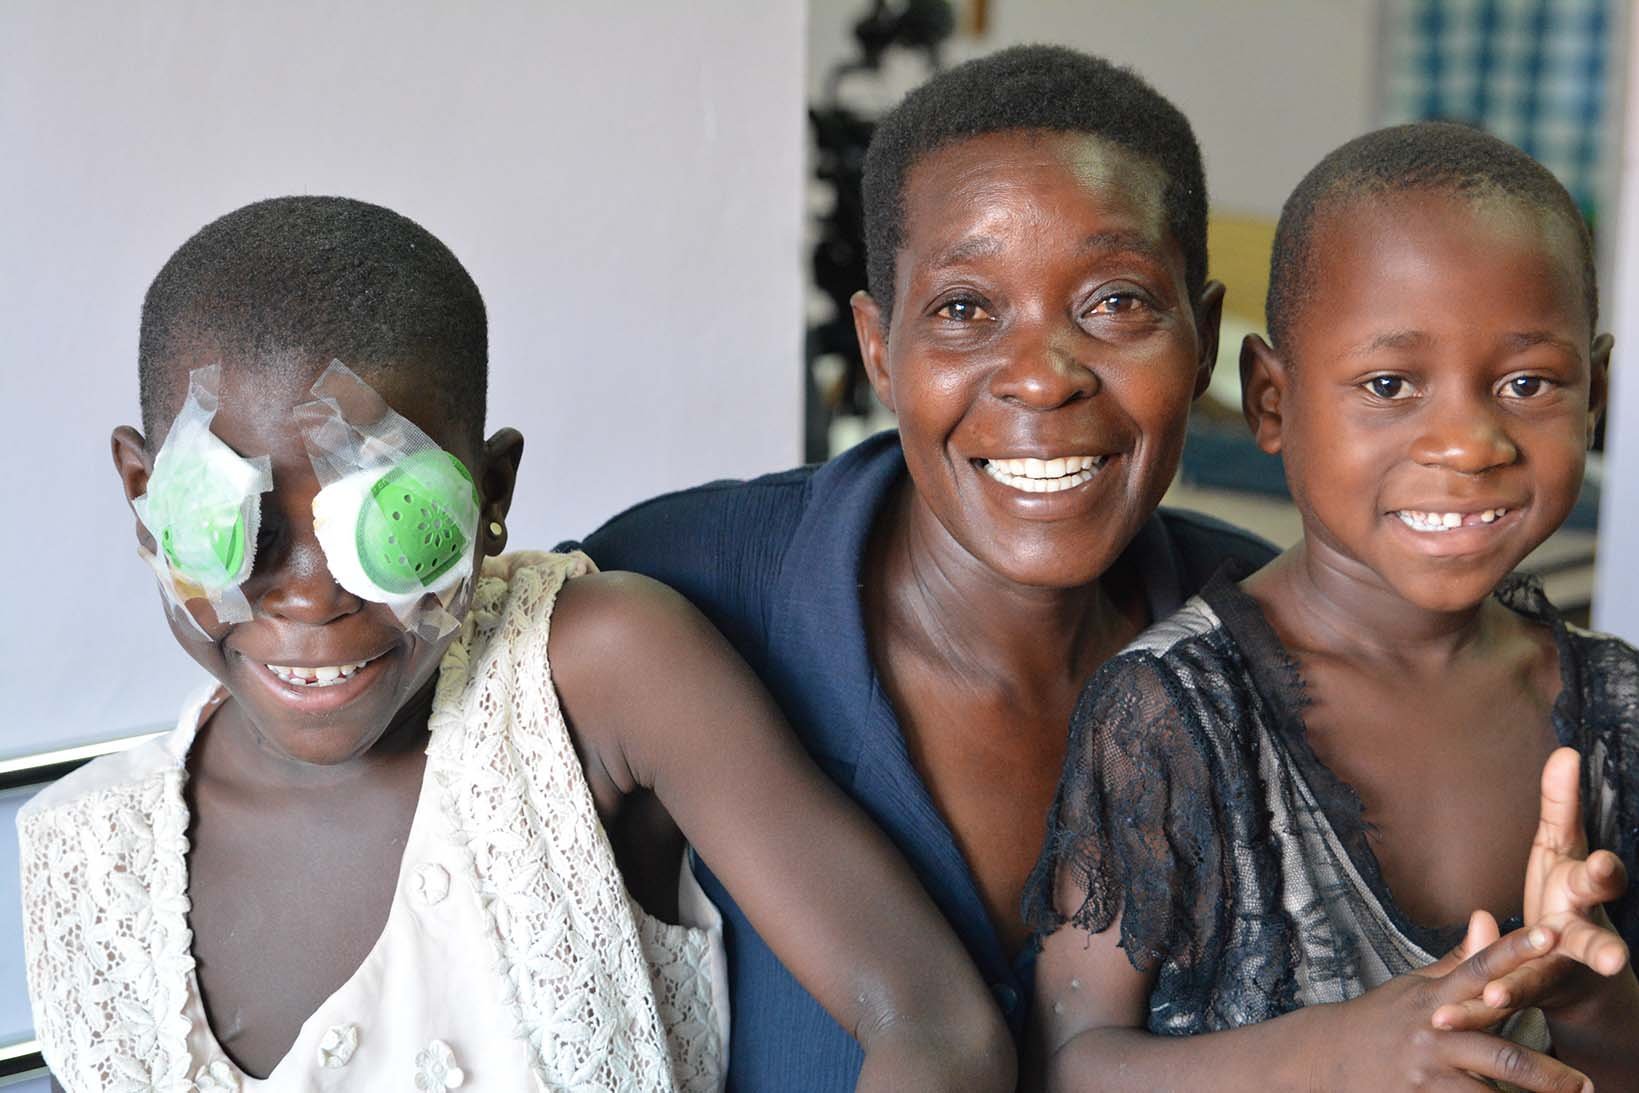 Una ragazza ugandese con una benda sull'occhio siede accanto a sua madre e sua nipote su un letto d'ospedale.